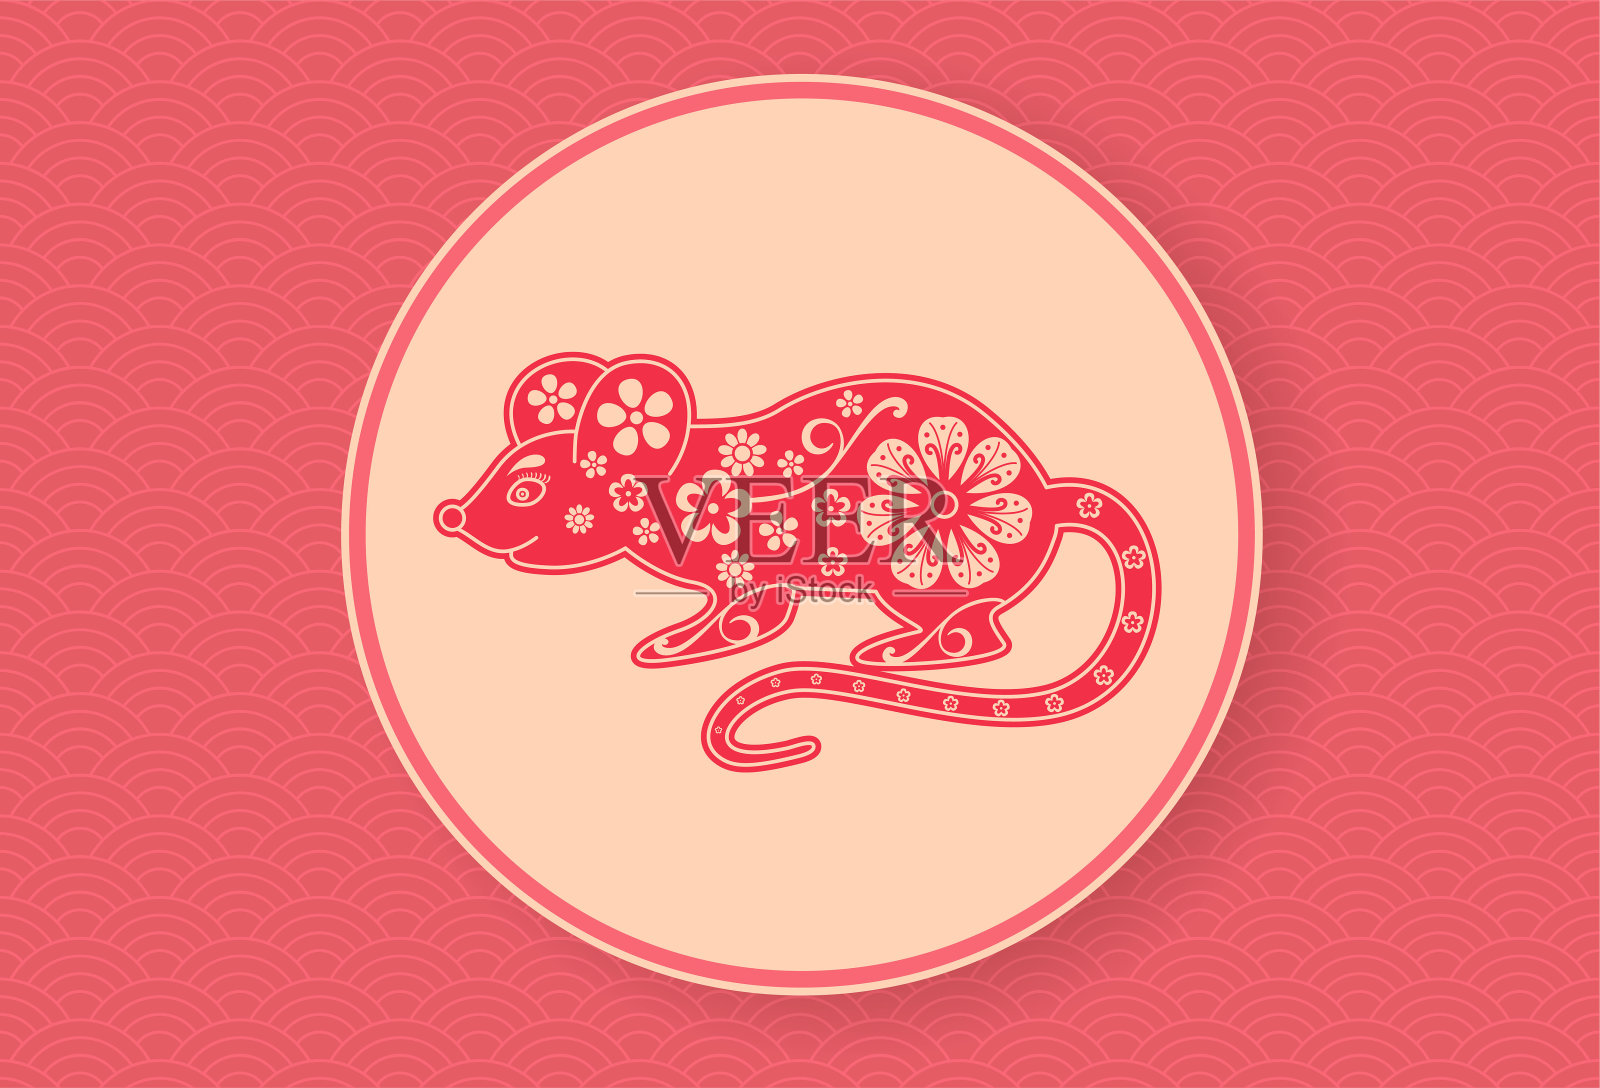 2020年中国的老鼠。农历新年横幅设计模板。红色的波浪模式。星座。抽象的花朵纹理。鼠标的剪影。星座的象征。珊瑚的颜色背景插画图片素材